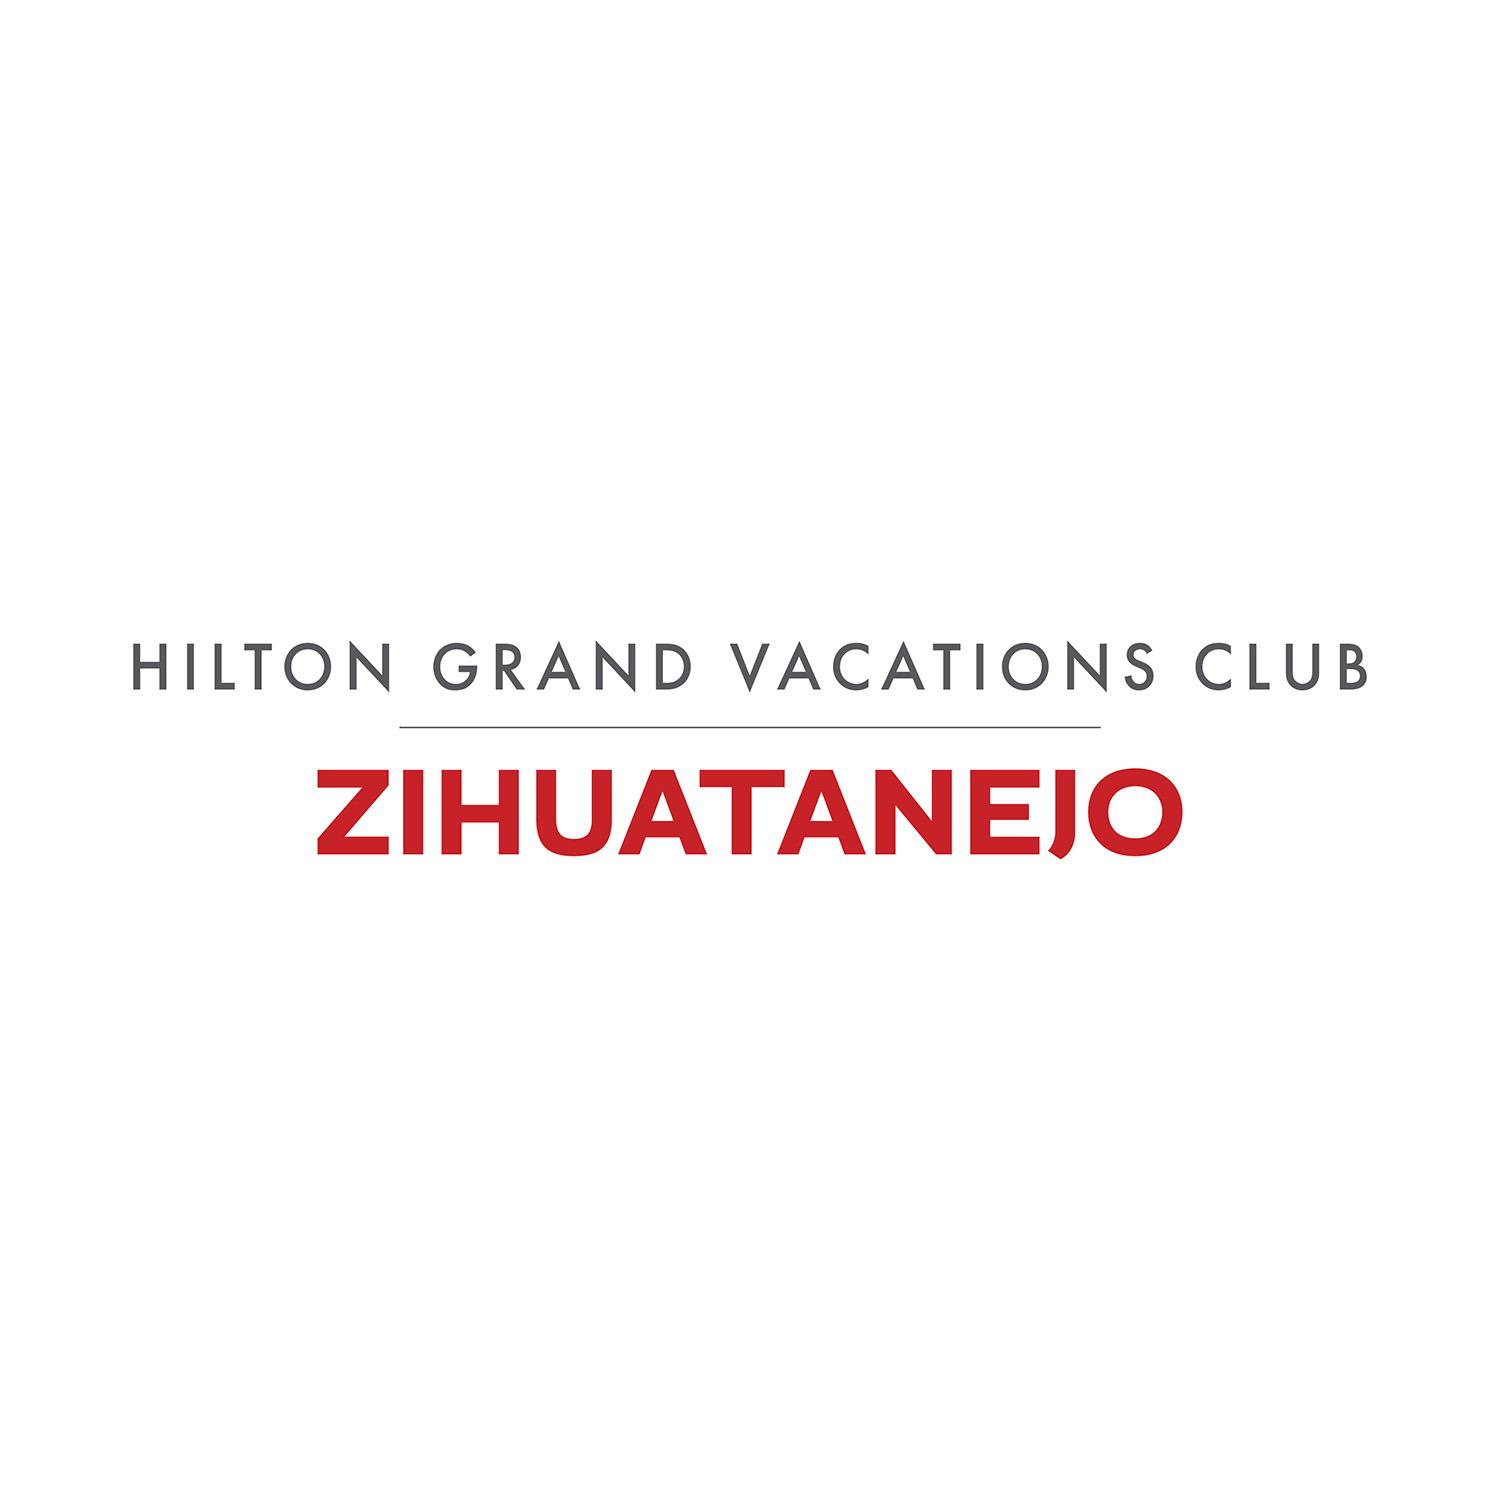 Hilton Grand Vacations Club Zihuatanejo Mexico Logo